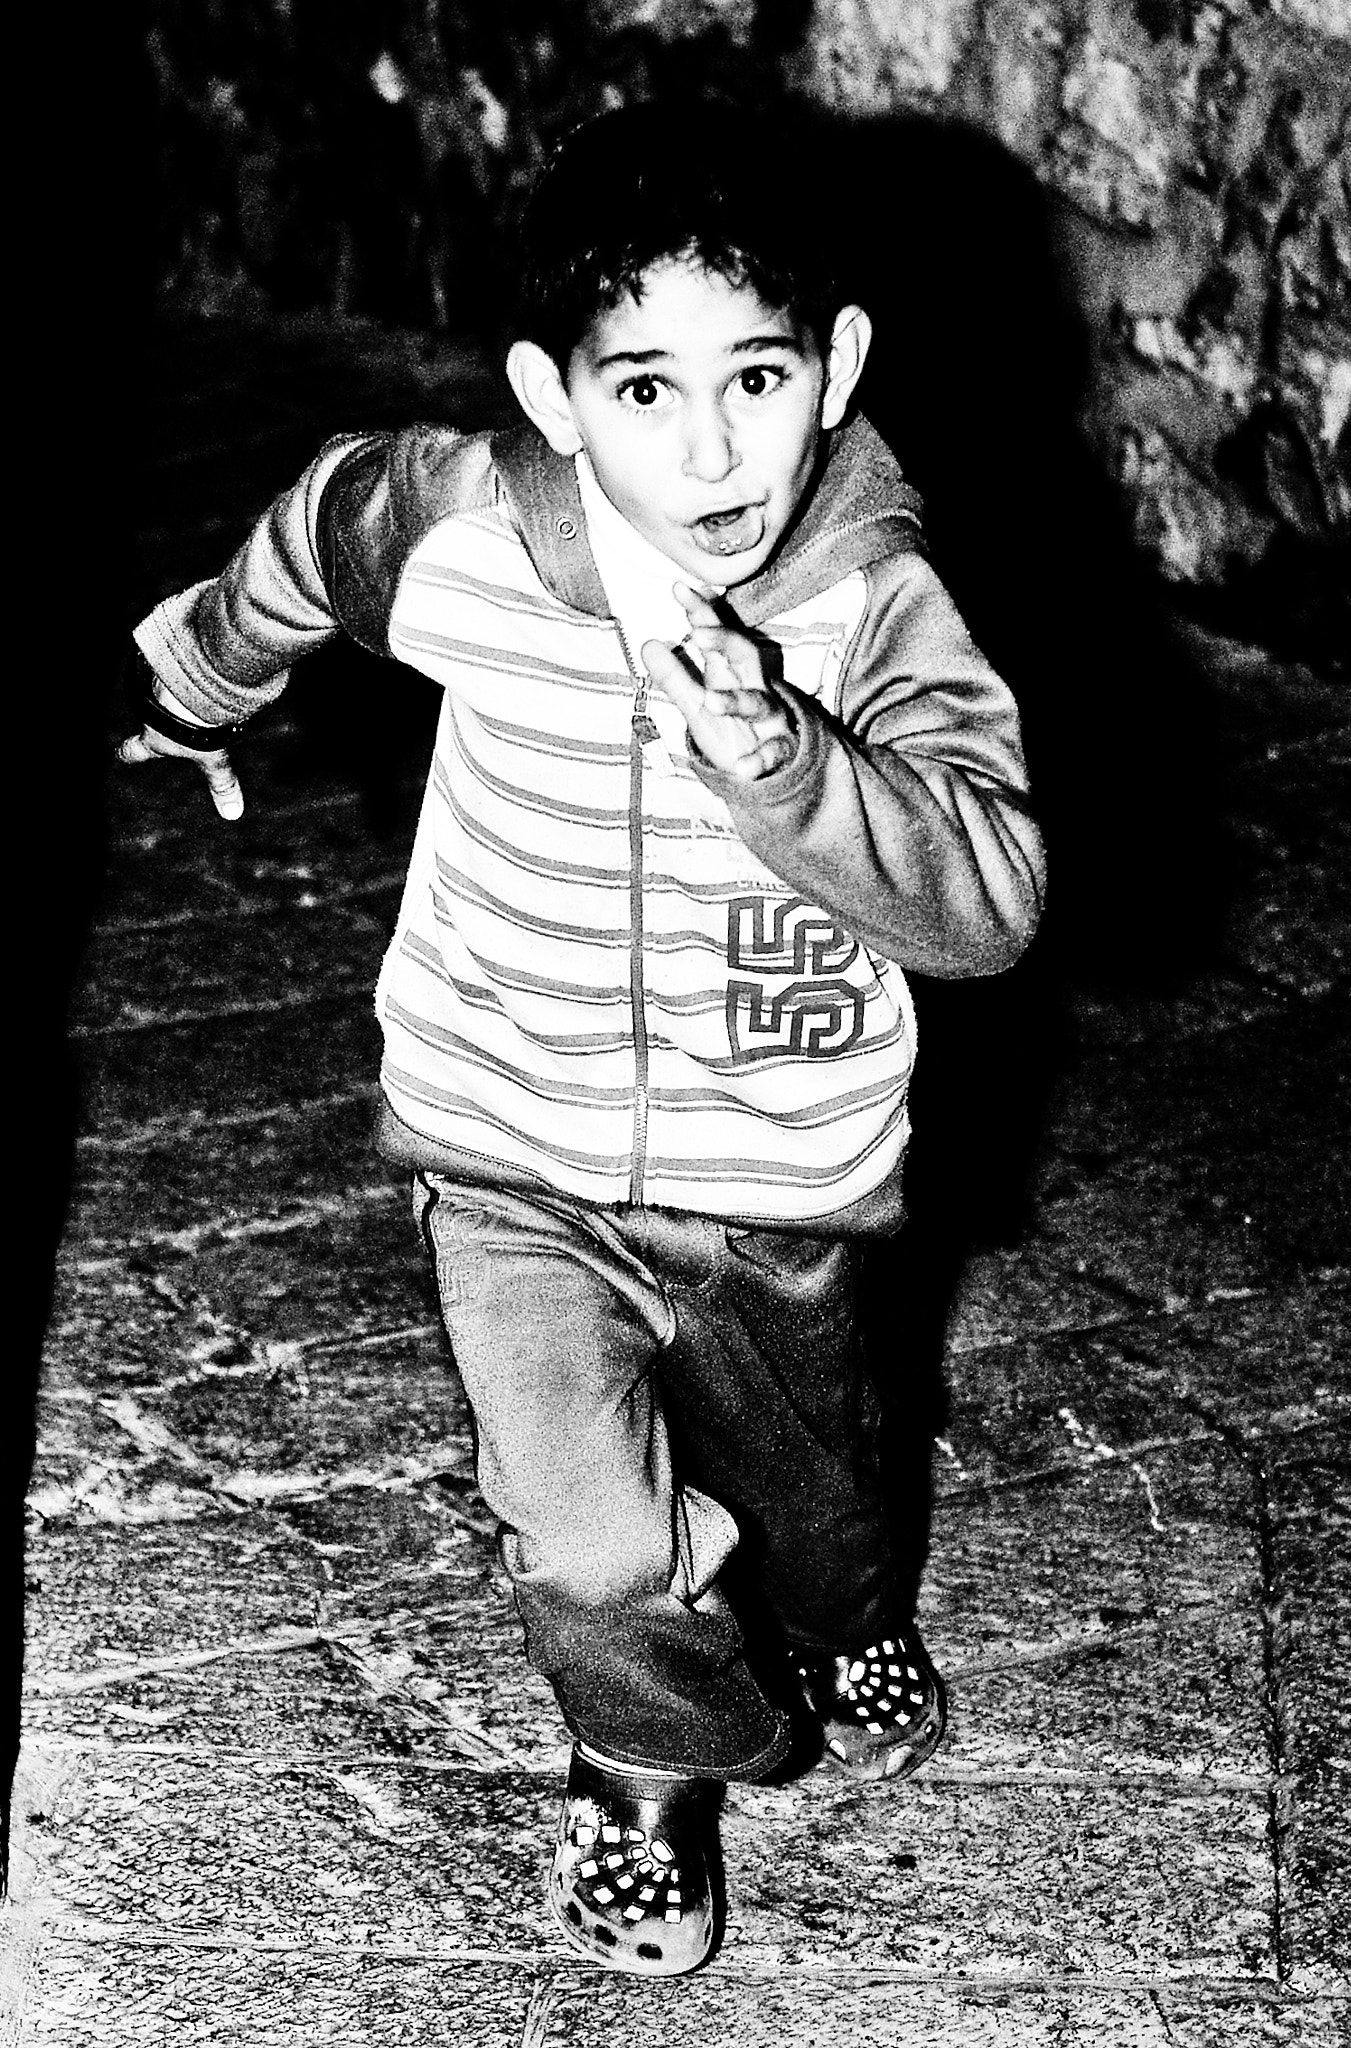 Pentax K200D + Pentax smc FA 43mm F1.9 Limited sample photo. Jerusalem boy photography